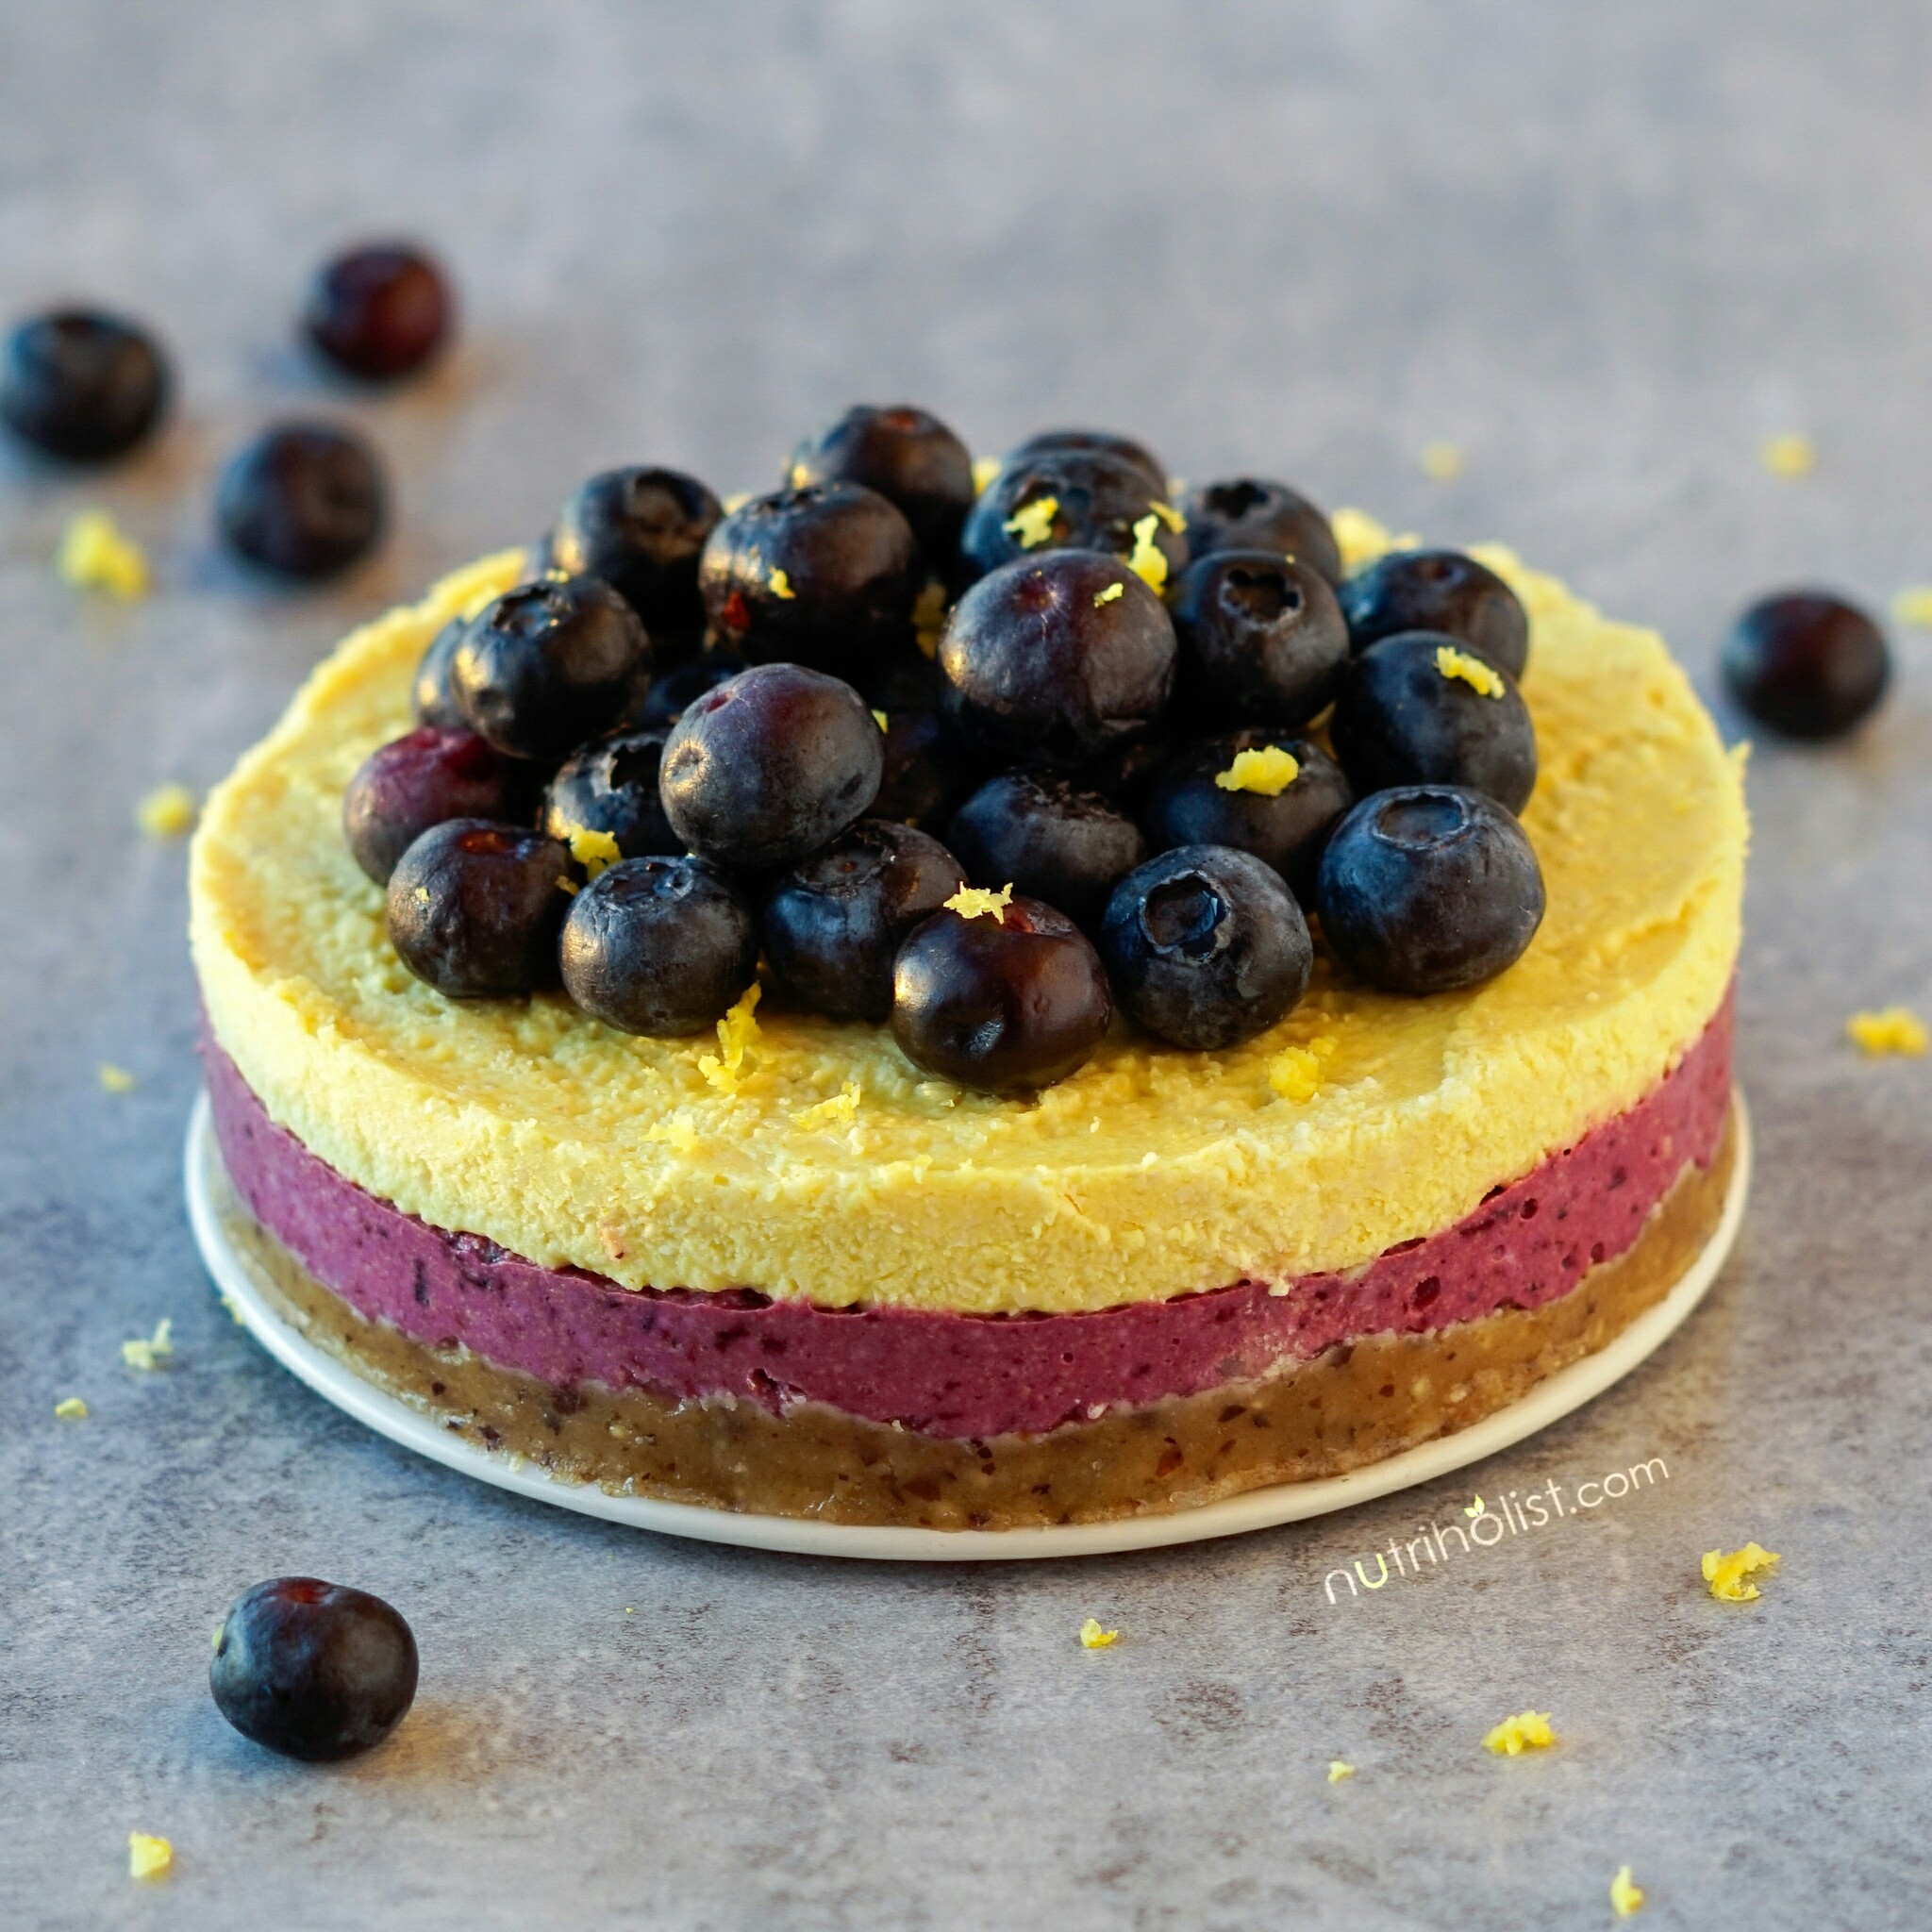 Blueberry Lemon Cake - Nutriholist